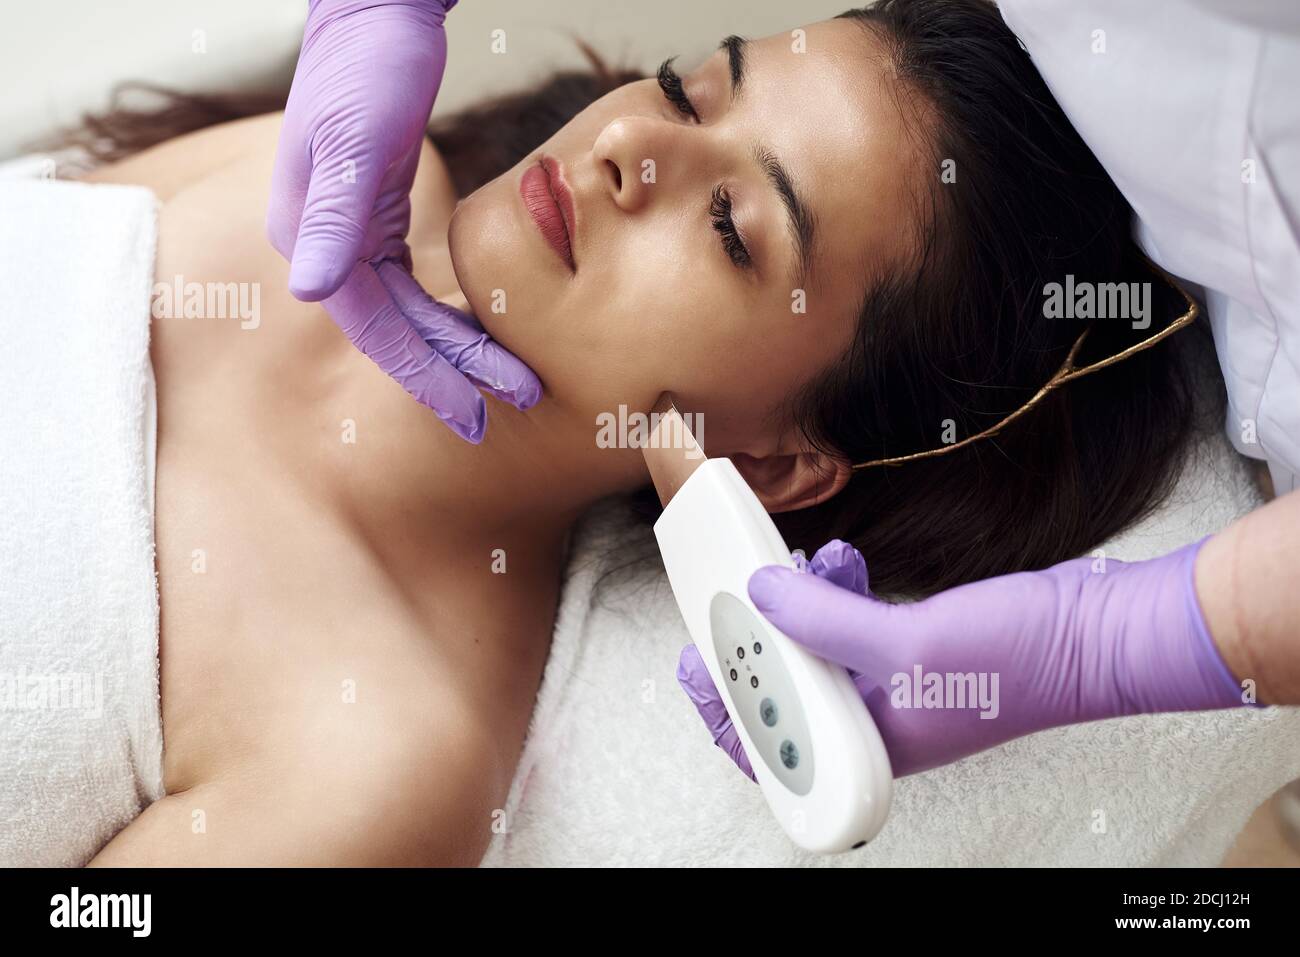 Eine Frau macht eine Ultraschallreinigung des Gesichts und der Haut zu einem Klienten. Moderne Ausstattung. Junge hübsche Frau, die Behandlungen in Schönheitssalons erhält und auf der Couch liegt. Stockfoto